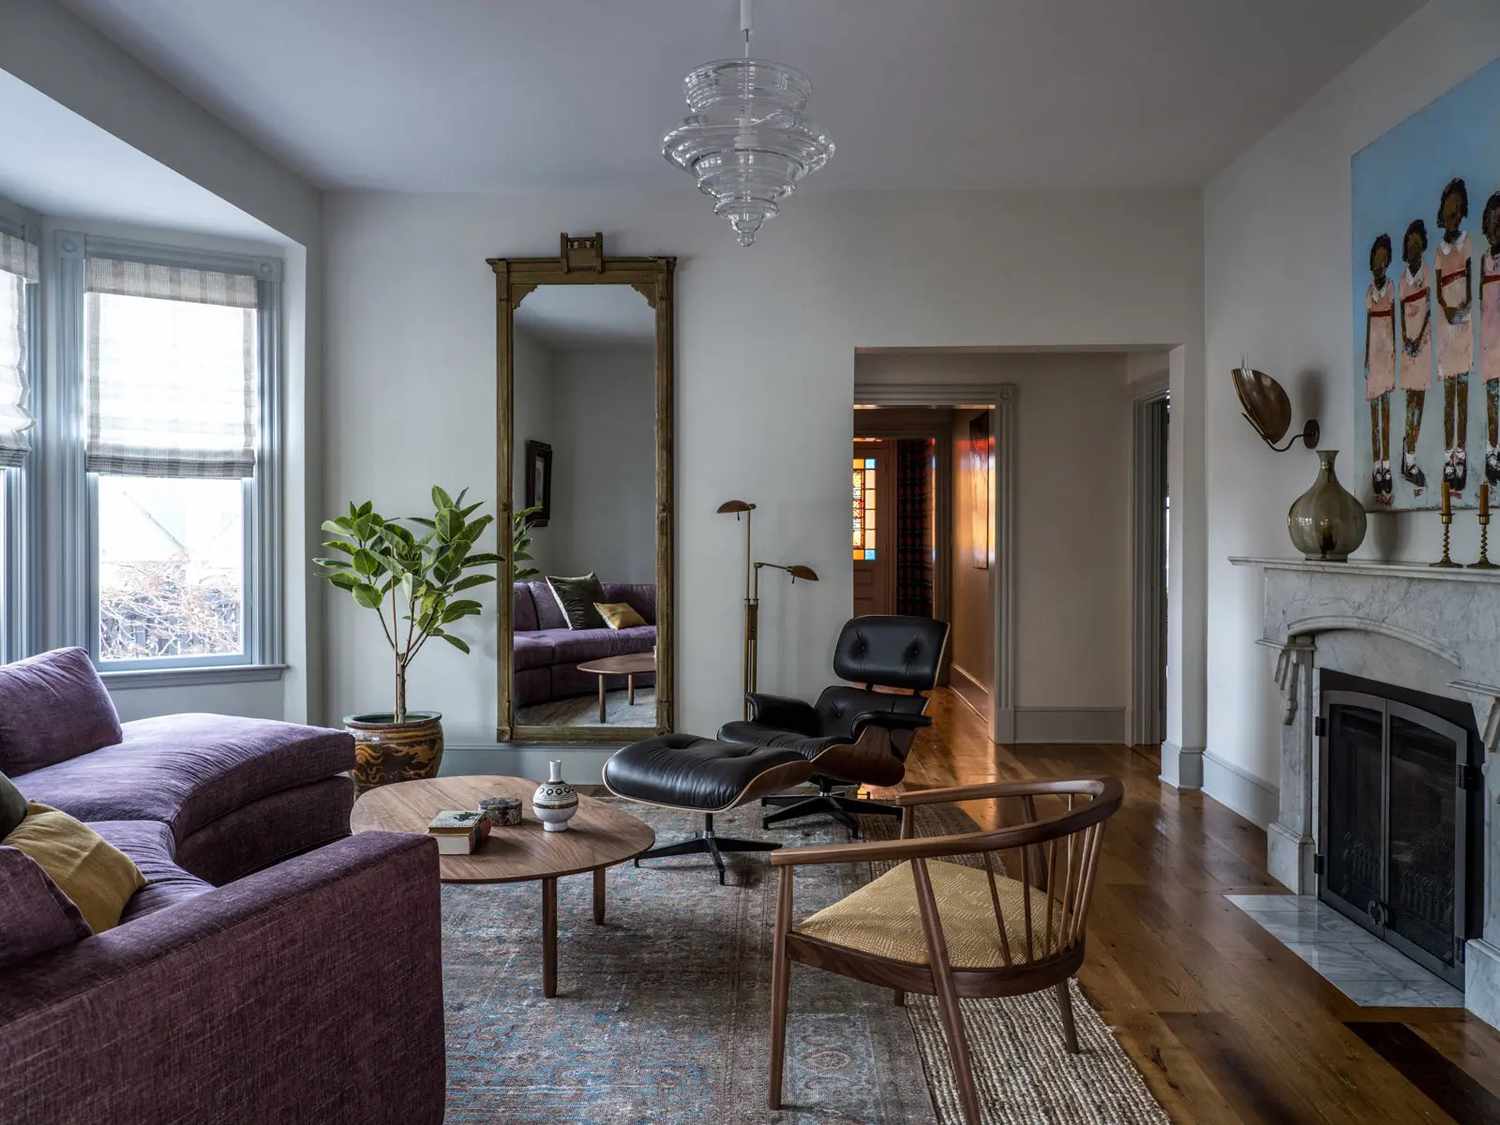 Schickes modernes Wohnzimmer mit geschwungener lila Couch.